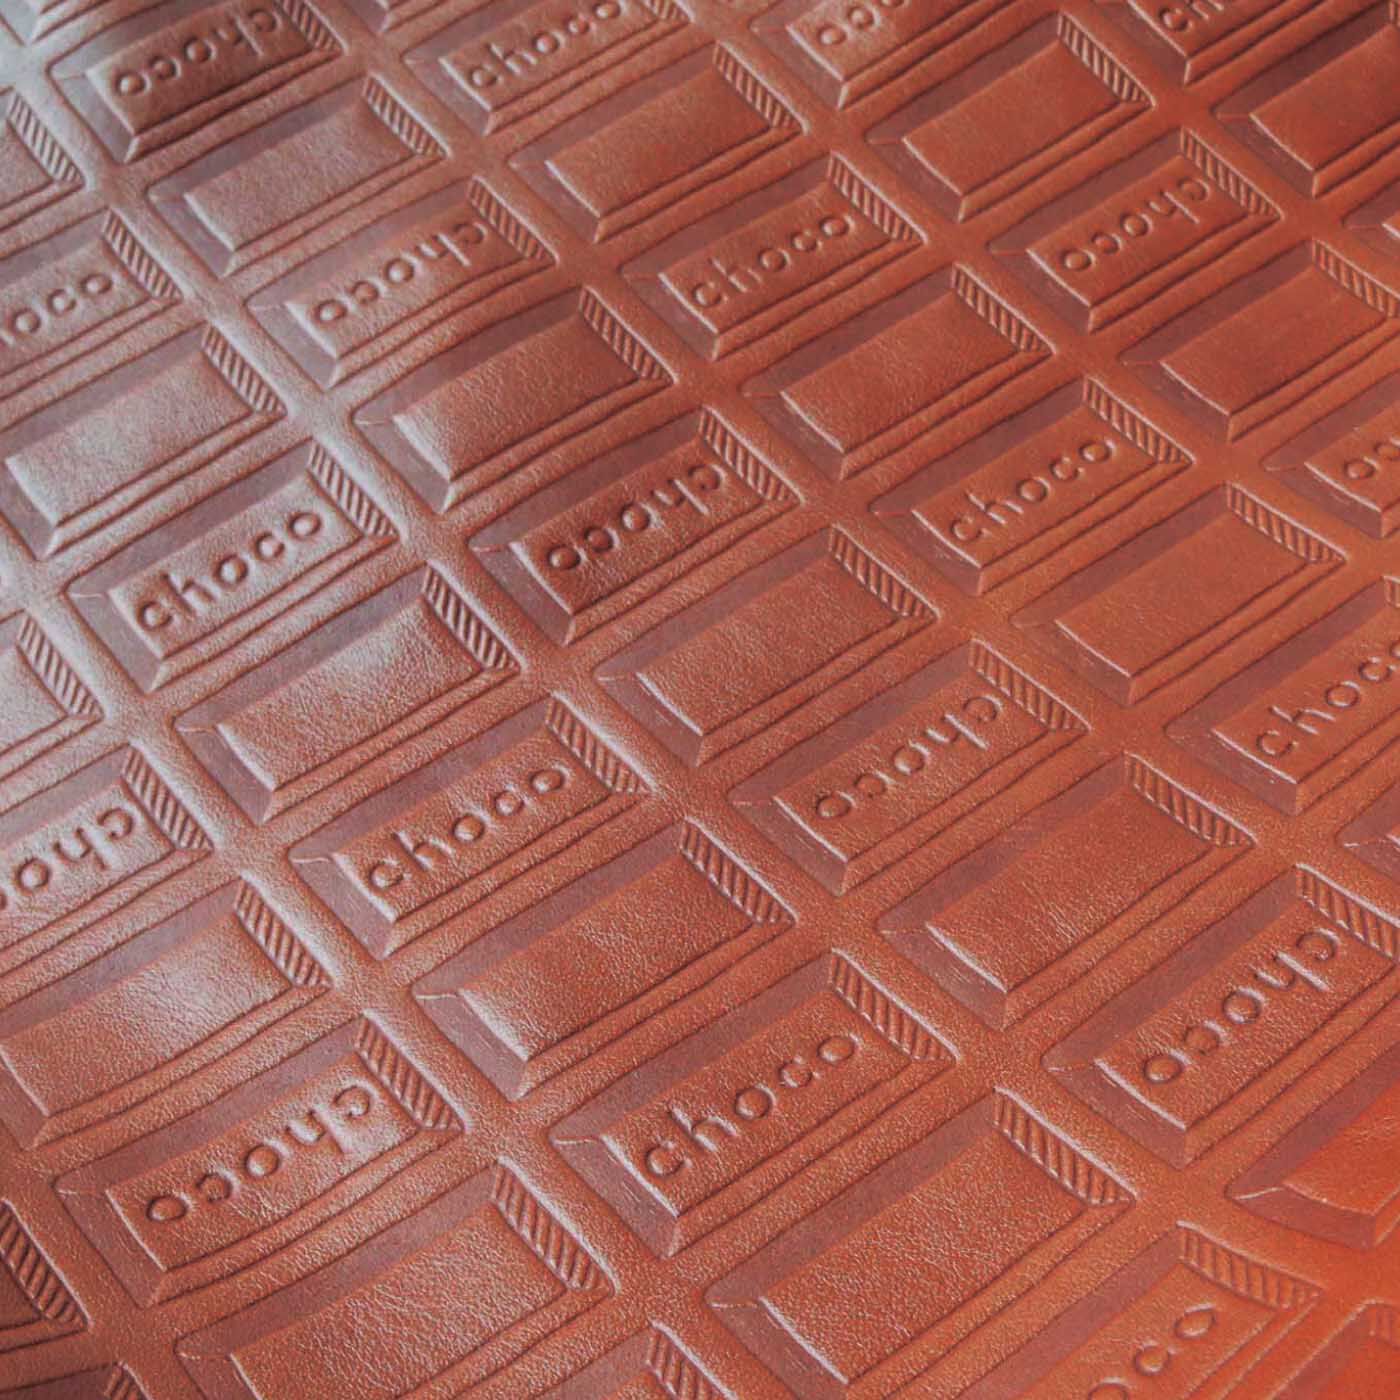 ＆Stories|チョコレートバイヤーと作った　職人本革のトートバッグ〈ブラウン〉|牛革にチョコレートの刻印したレザーは、本物のチョコレートの色と比べながら、みりがセレクトしました。